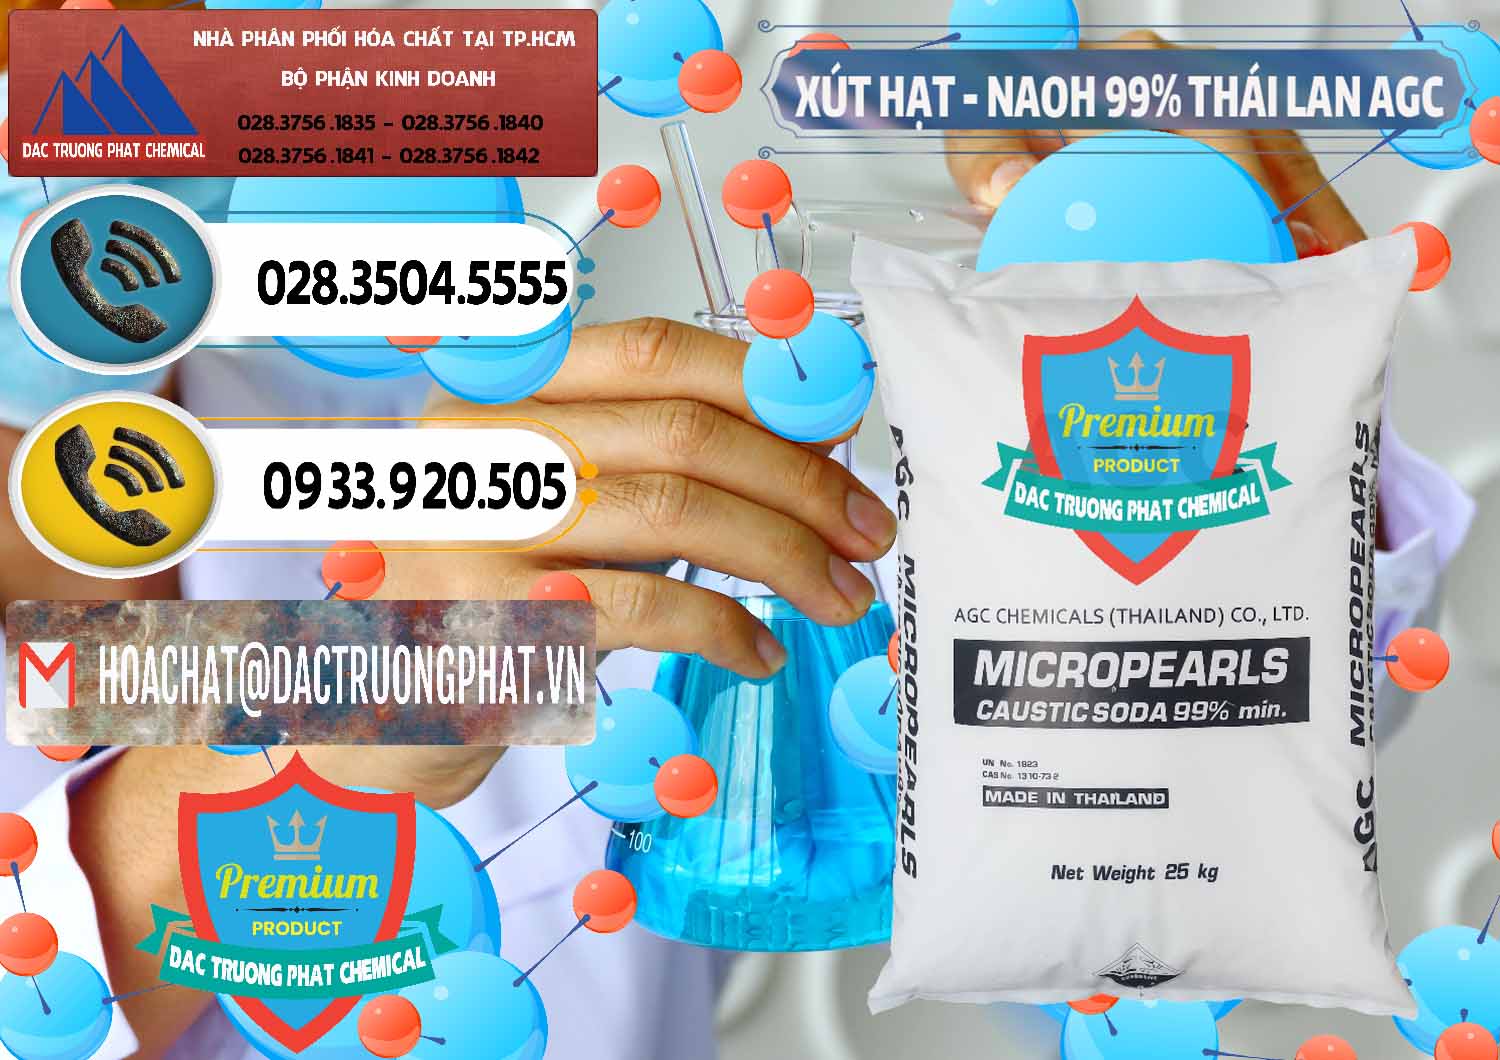 Đơn vị chuyên cung cấp và bán Xút Hạt - NaOH Bột 99% AGC Thái Lan - 0168 - Công ty chuyên phân phối & bán hóa chất tại TP.HCM - hoachatdetnhuom.vn